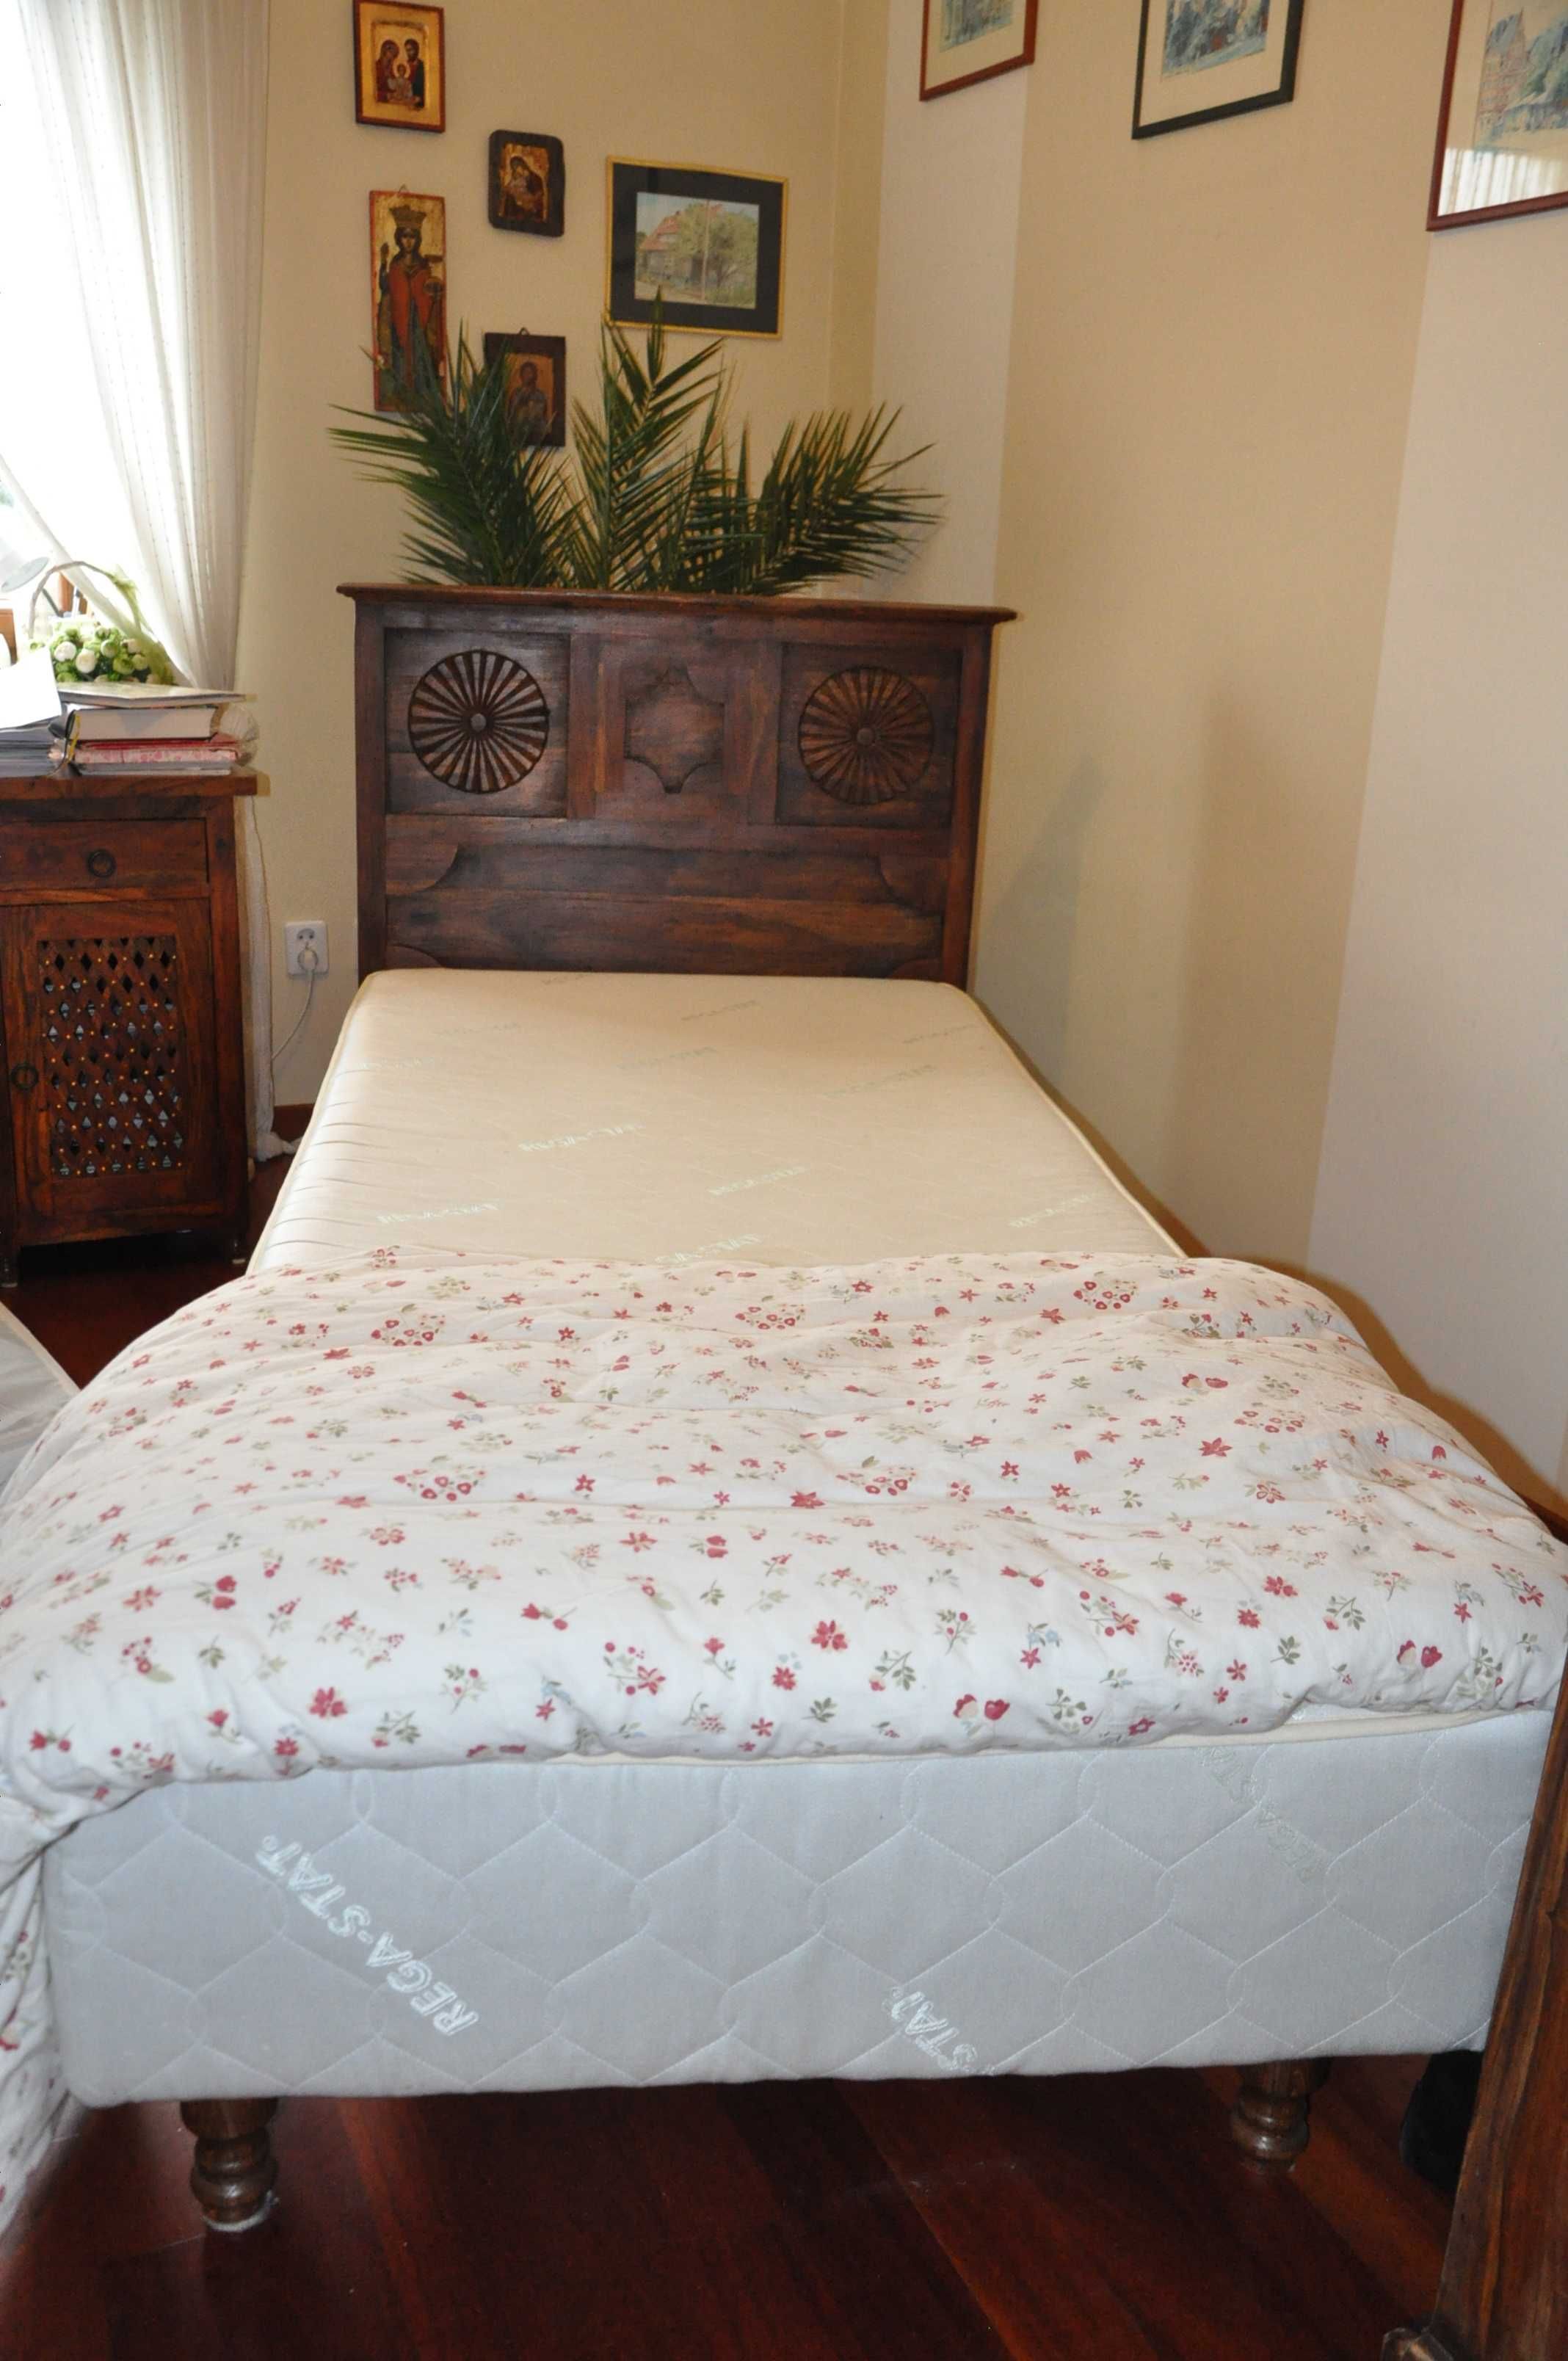 Łóżko drewniane, drewno egzotyczne, z drewna, rzeźbione